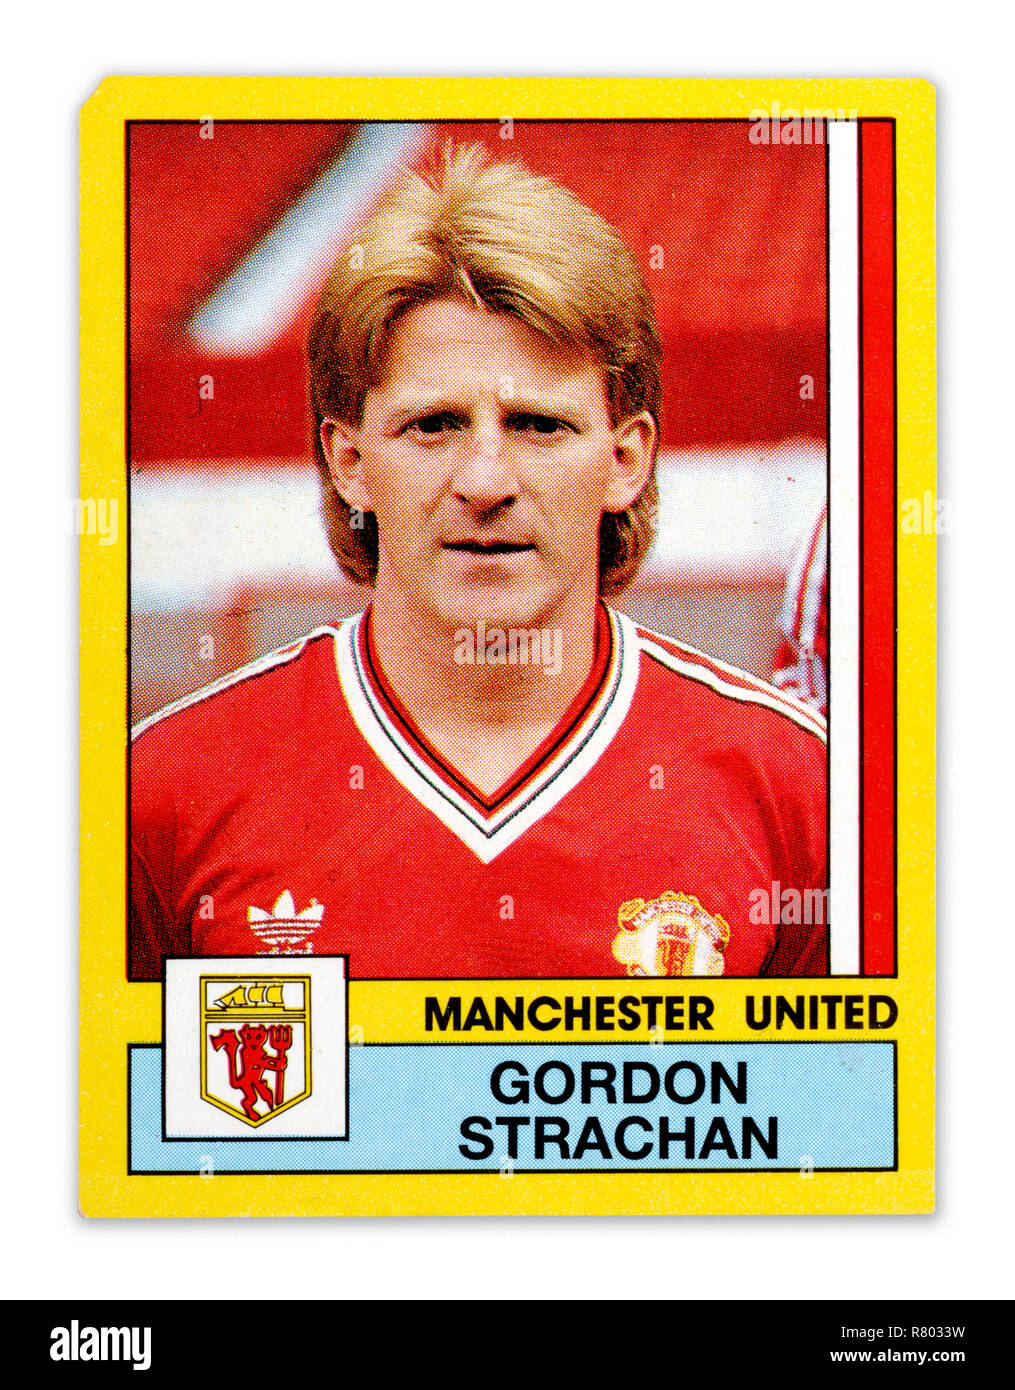 Ein Panini football player Card mit Gordon Strachan Spielen für Manchester United Stockfoto